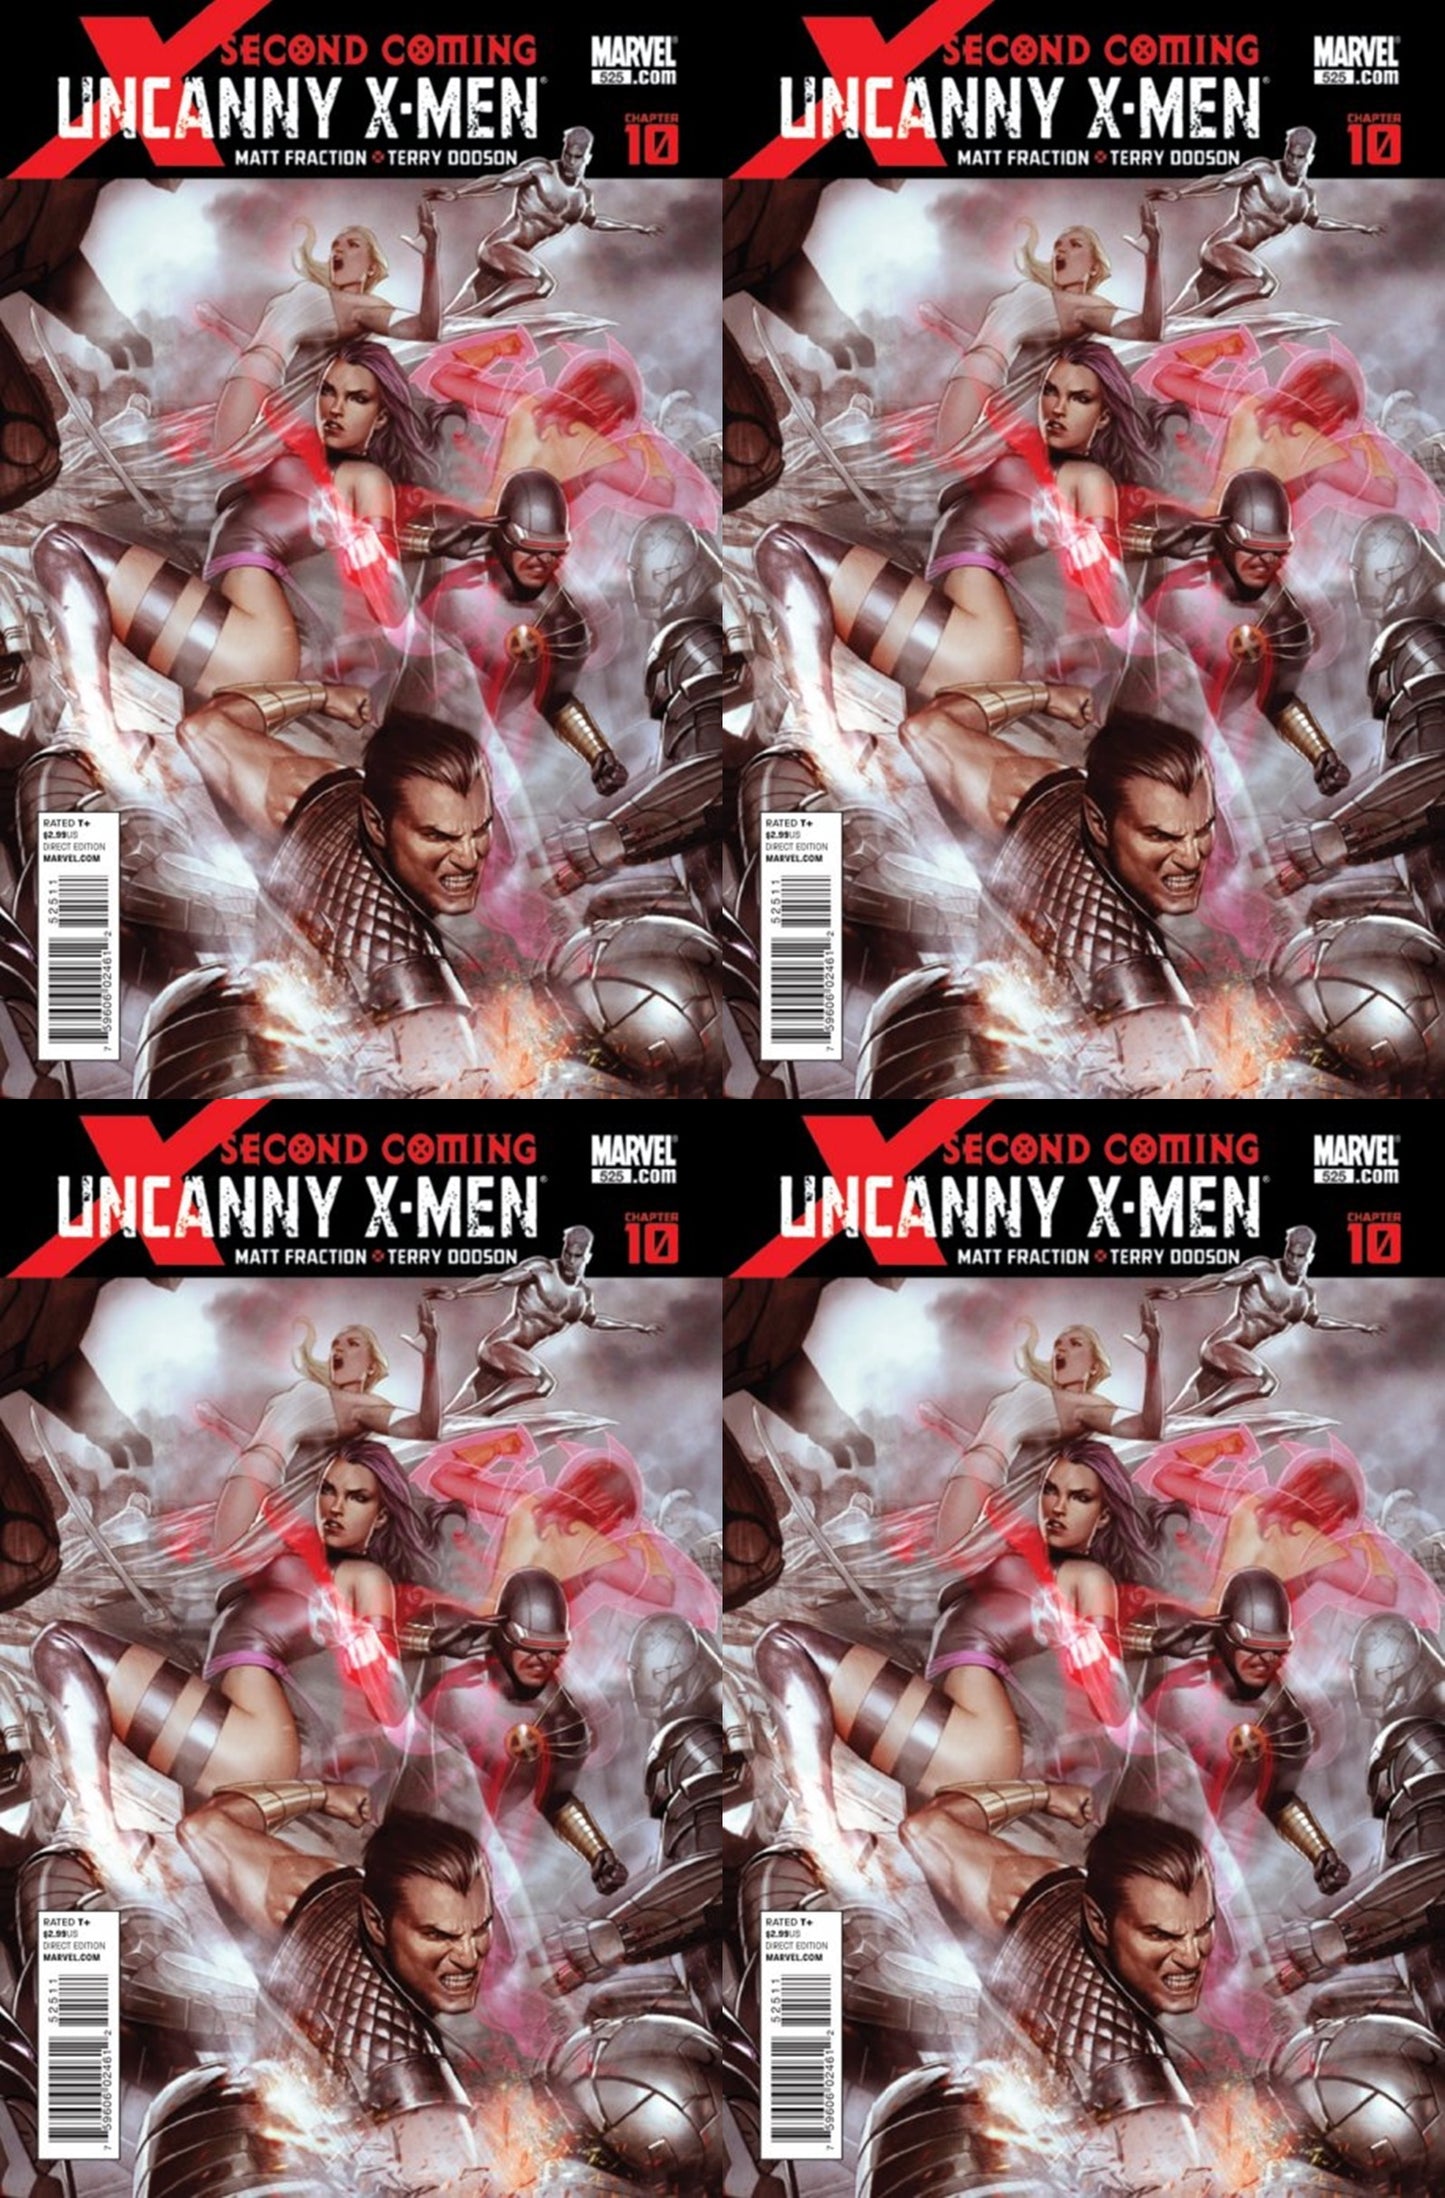 The Uncanny X-Men #525 Volume 1 (1981-2011) Marvel Comics - 4 Comics